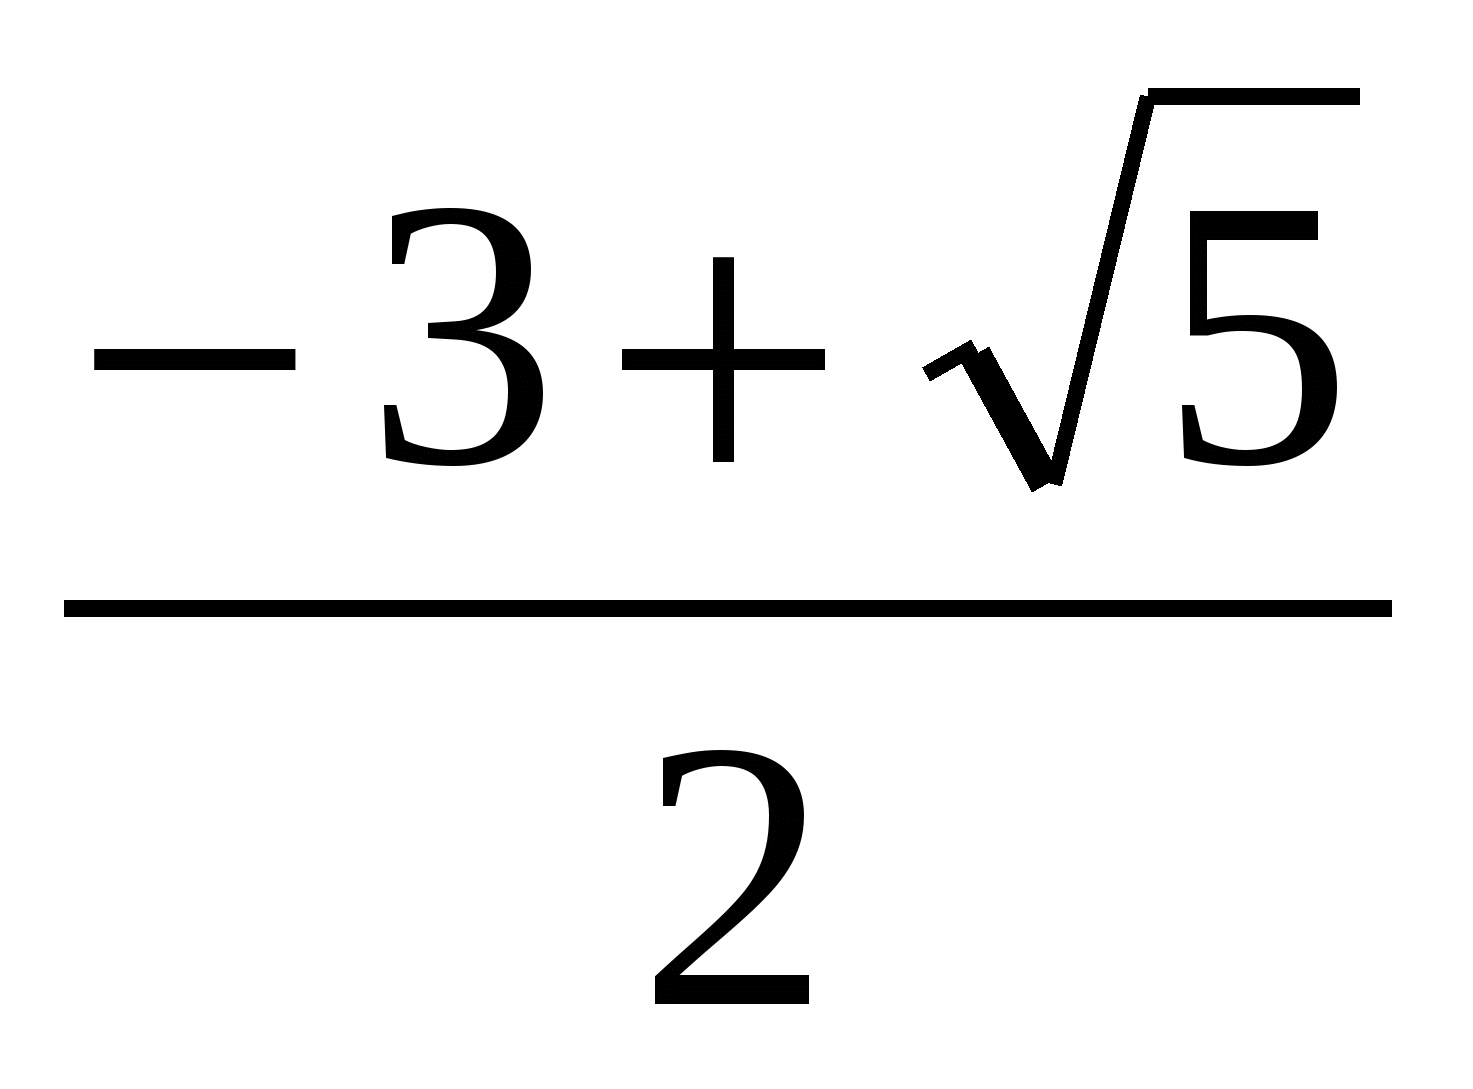 Урок математики «Решение алгебраических уравнений».10 класс